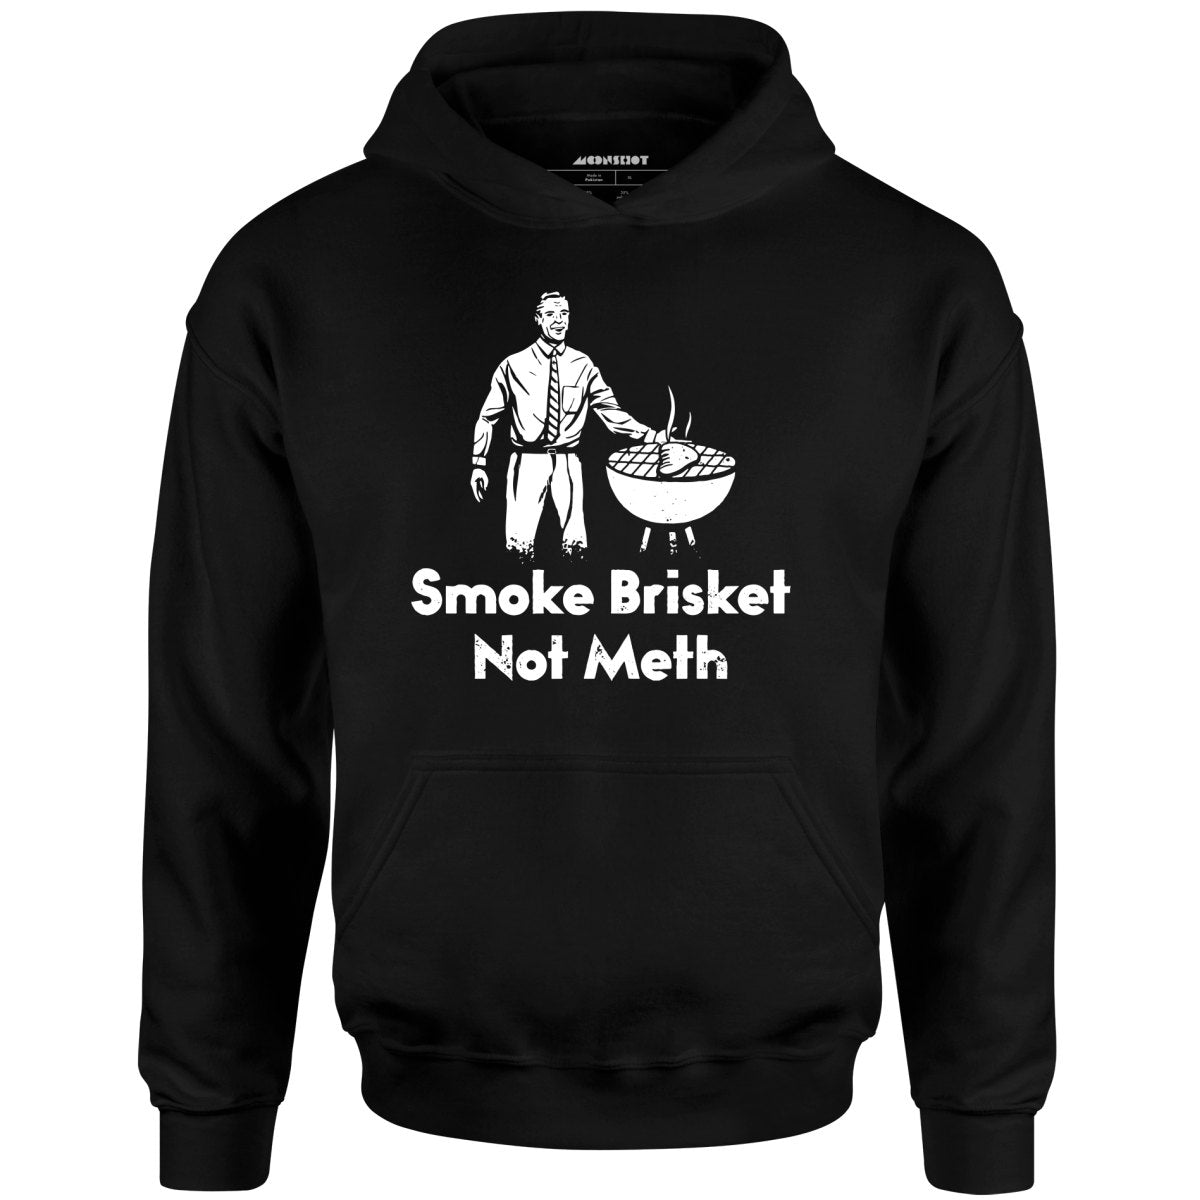 Smoke Brisket Not Meth v2 - Unisex Hoodie